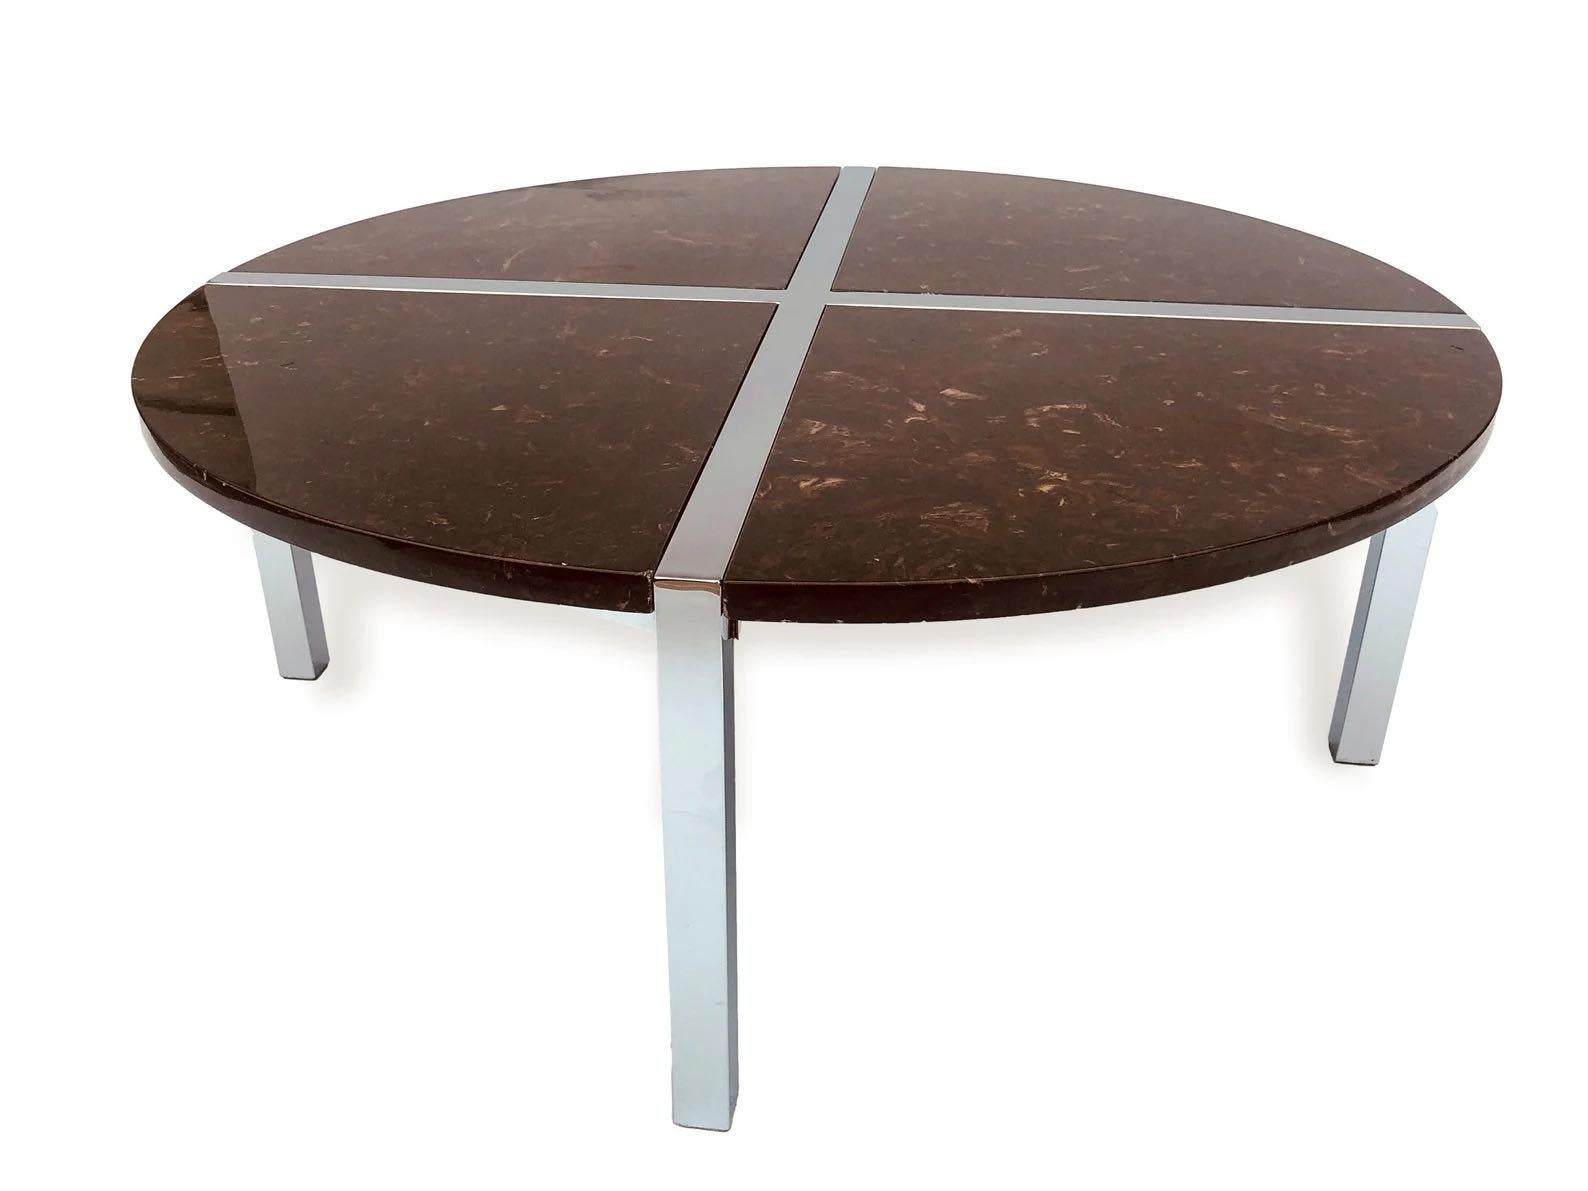 Cette table basse ronde en résine marbrée et chromée de style Milo Baughman est incroyablement unique et date d'environ 1970. Le design épuré présente un cadre en argent chromé avec des inserts en forme de tarte en résine marbrée brune. La table est